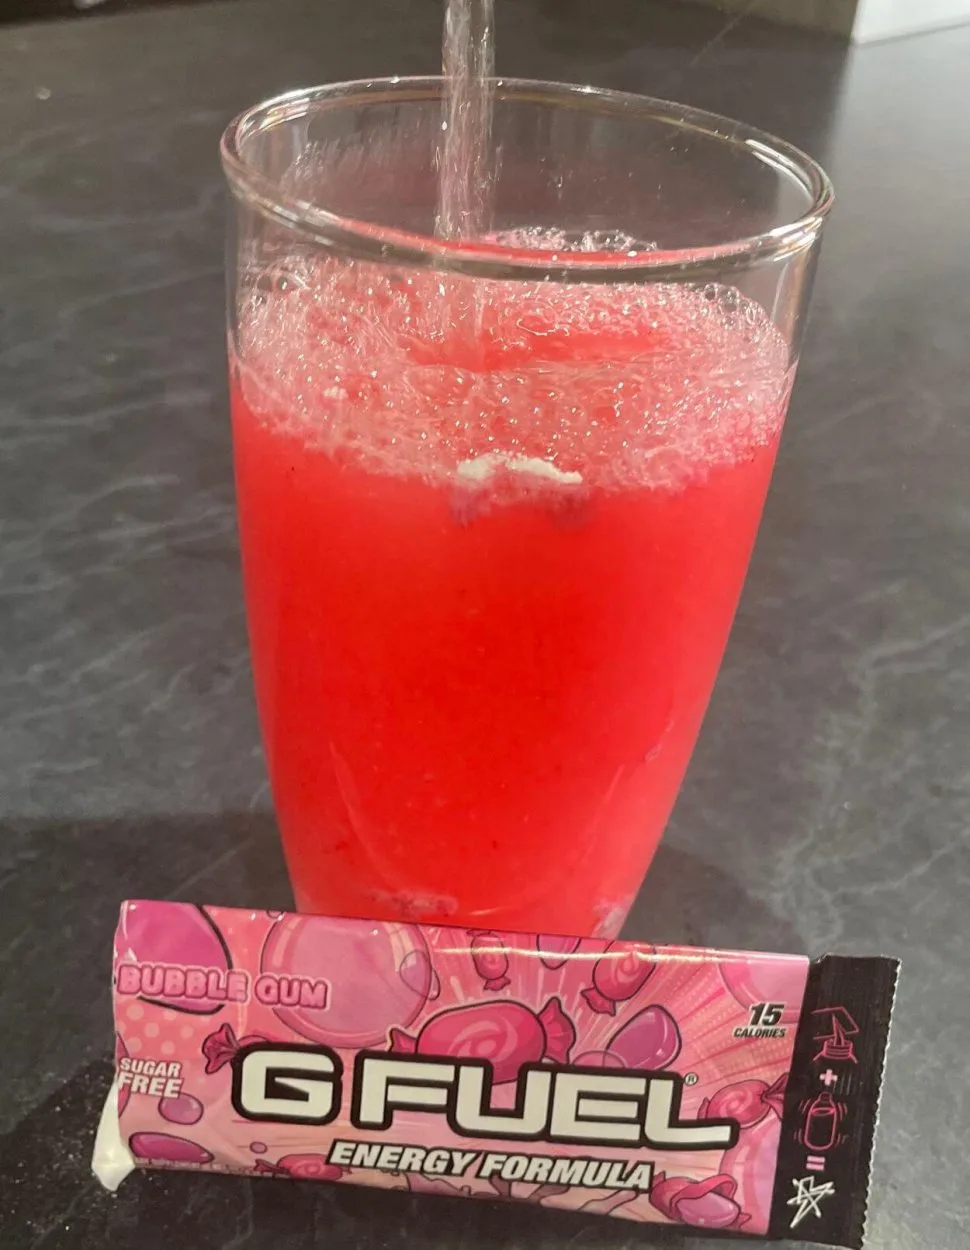 Bubble Gum flavored G Fuel.